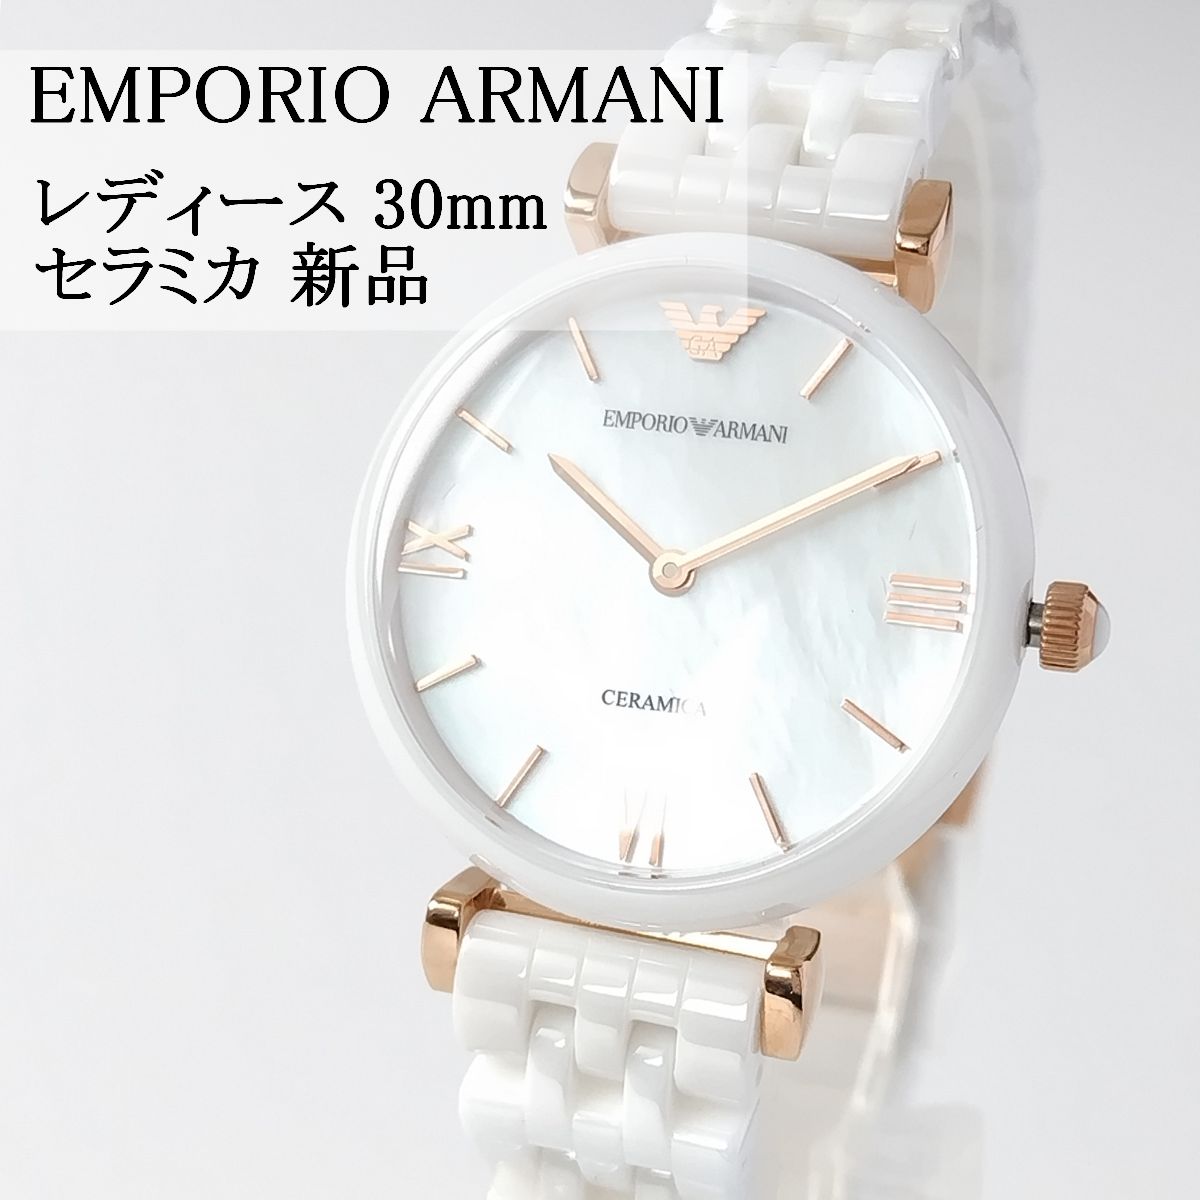 ホワイトセラミック新品レディース腕時計エンポリオ・アルマーニ30mm白 ...